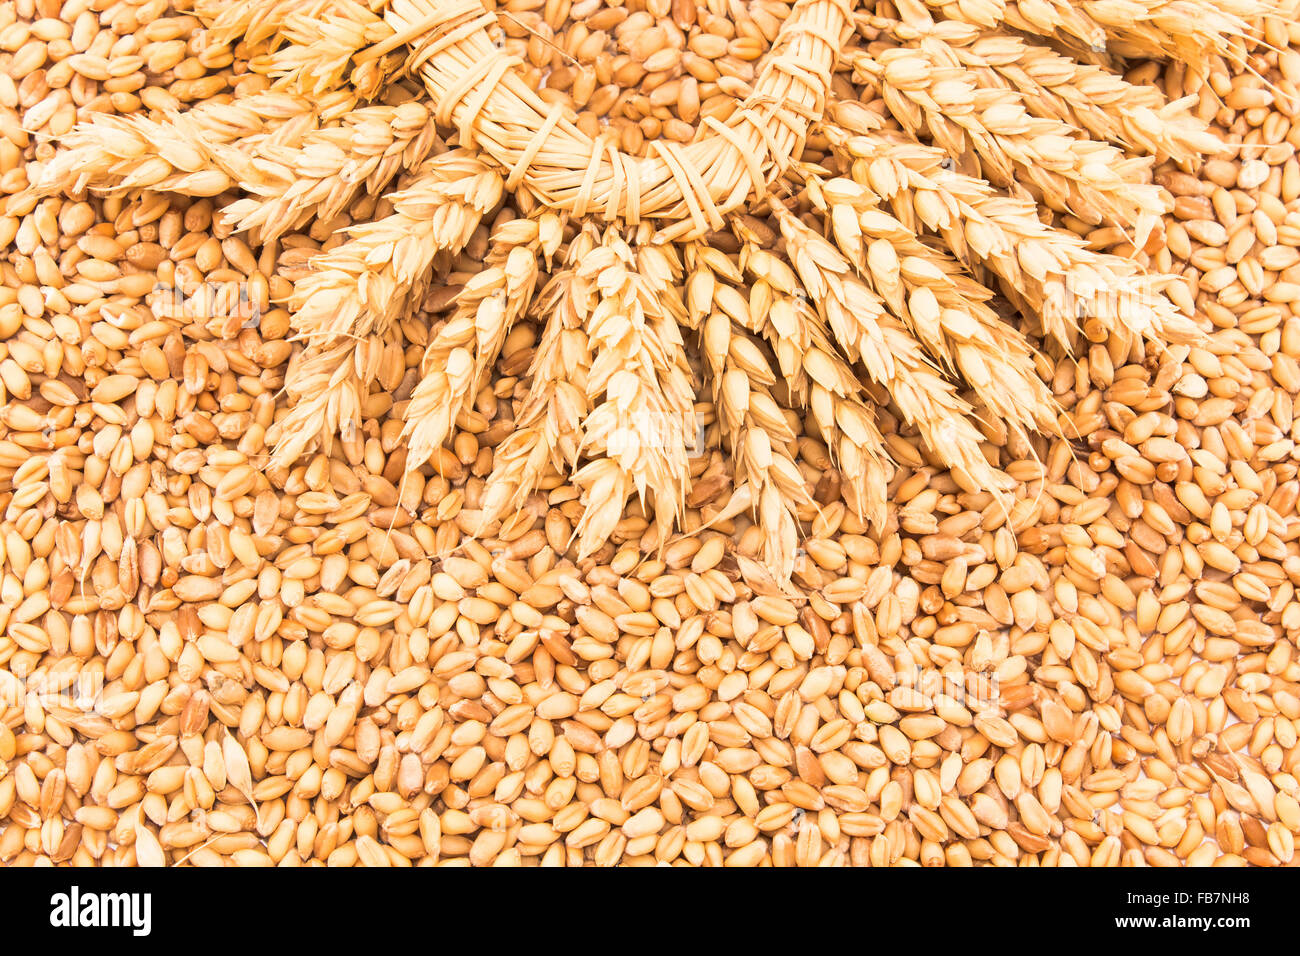 Закупка фуражного зерна. Ячмень фуражный. Пшеница. Пшеница фуражная. Пшеница продовольственная.